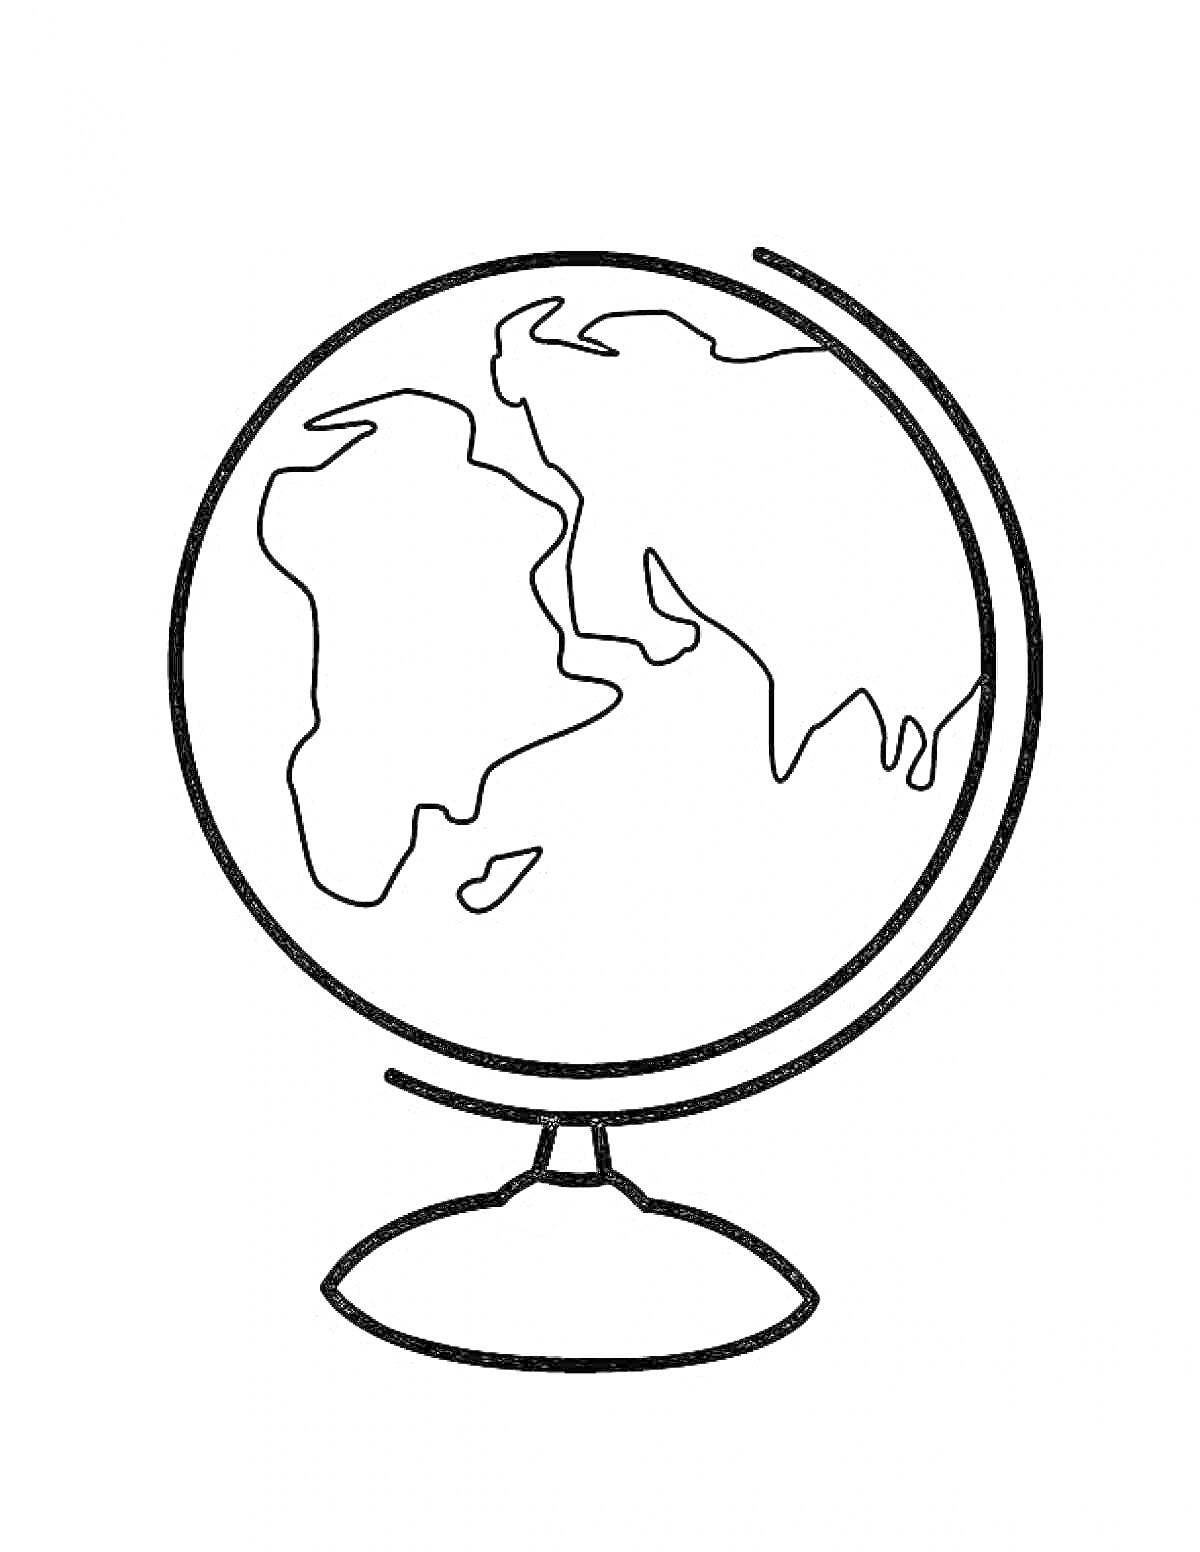 Глобус на подставке, контурное изображение